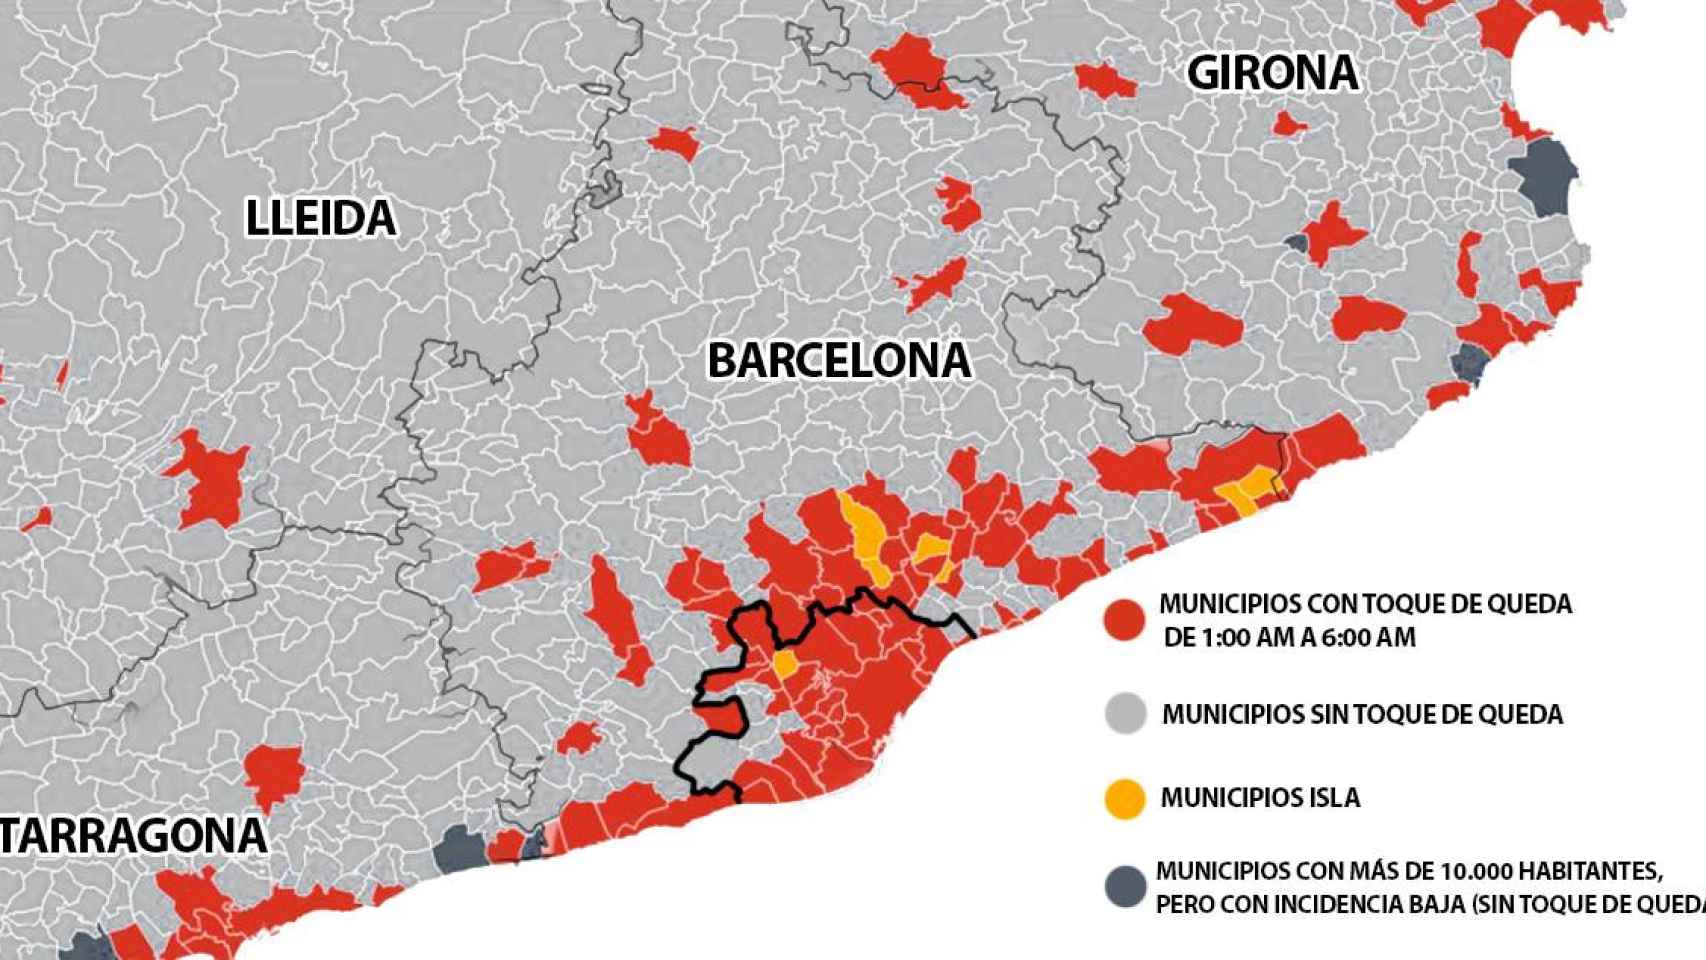 Mapa con los municipios afectados por el toque de queda / CG